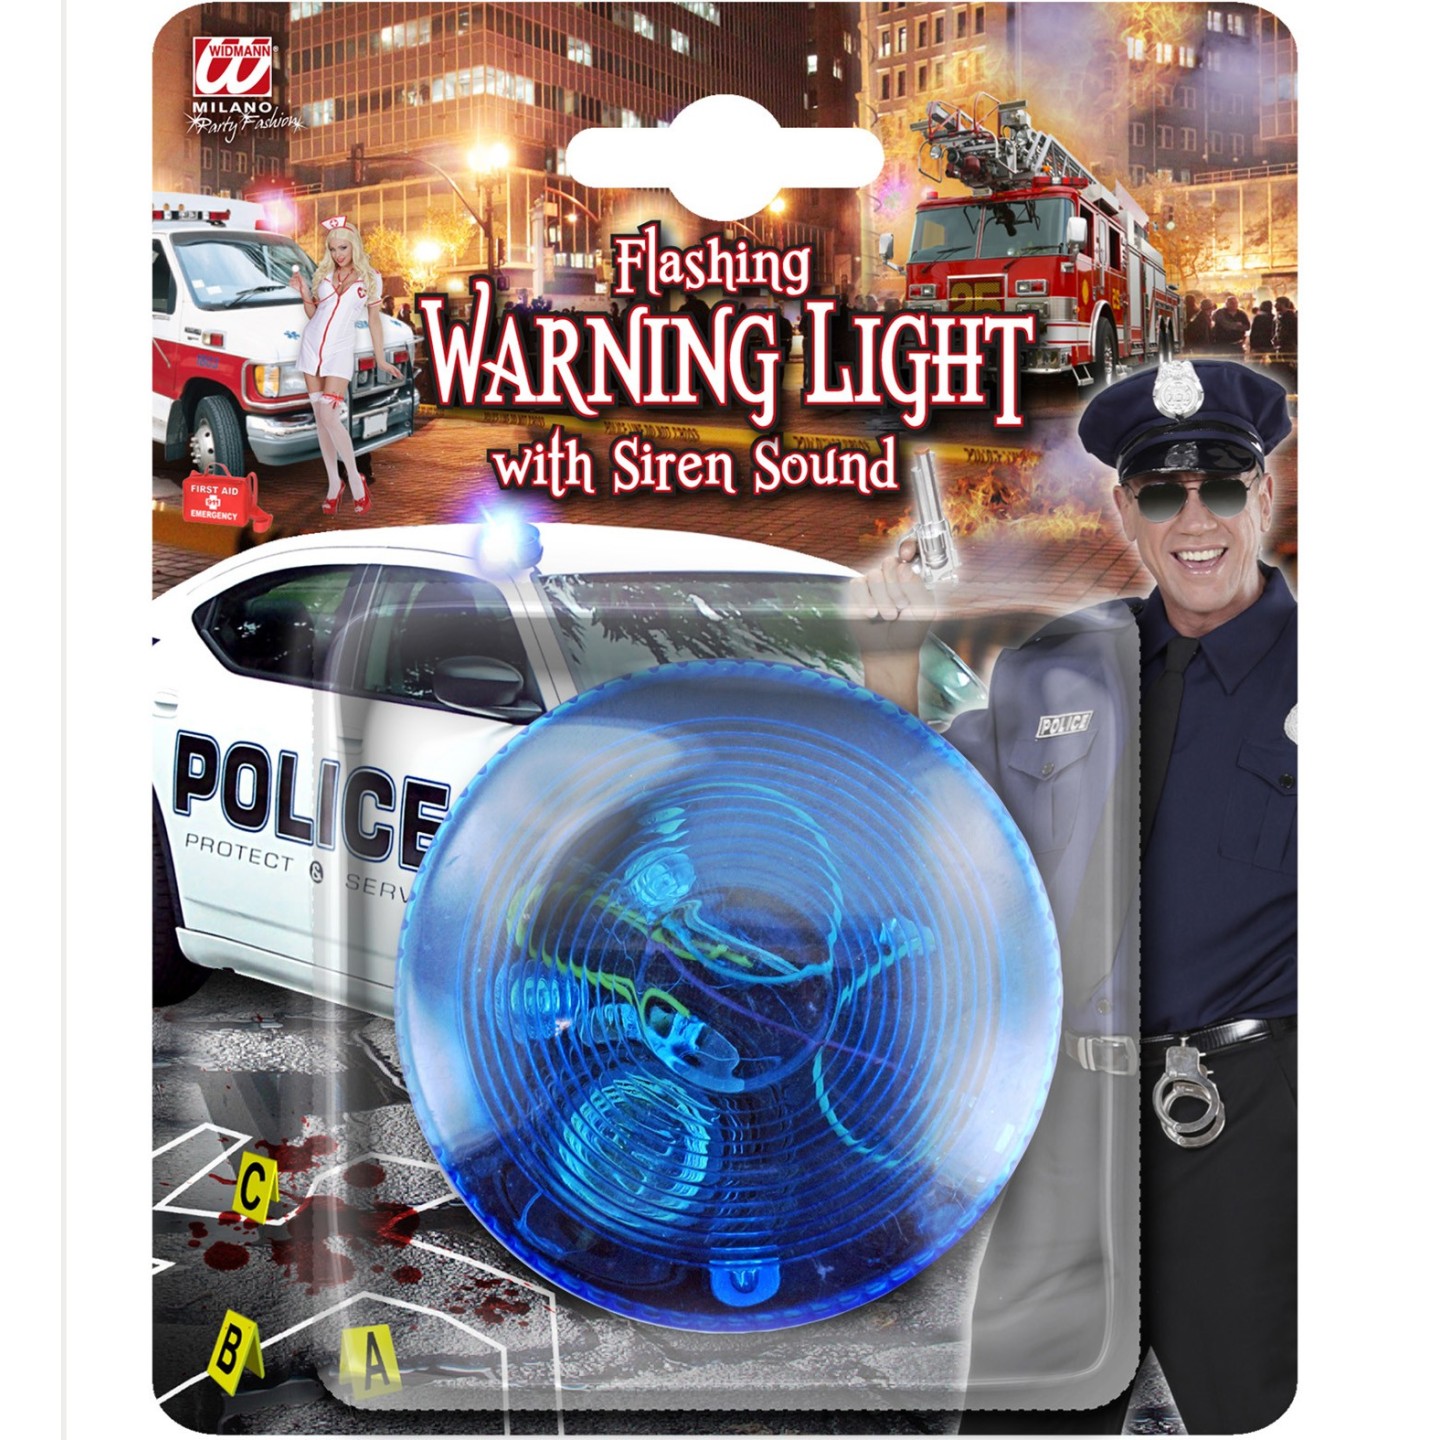 erven Verborgen landelijk Politie zwaailicht speelgoed kopen ? | Jokershop.be - Verkleedwinkel